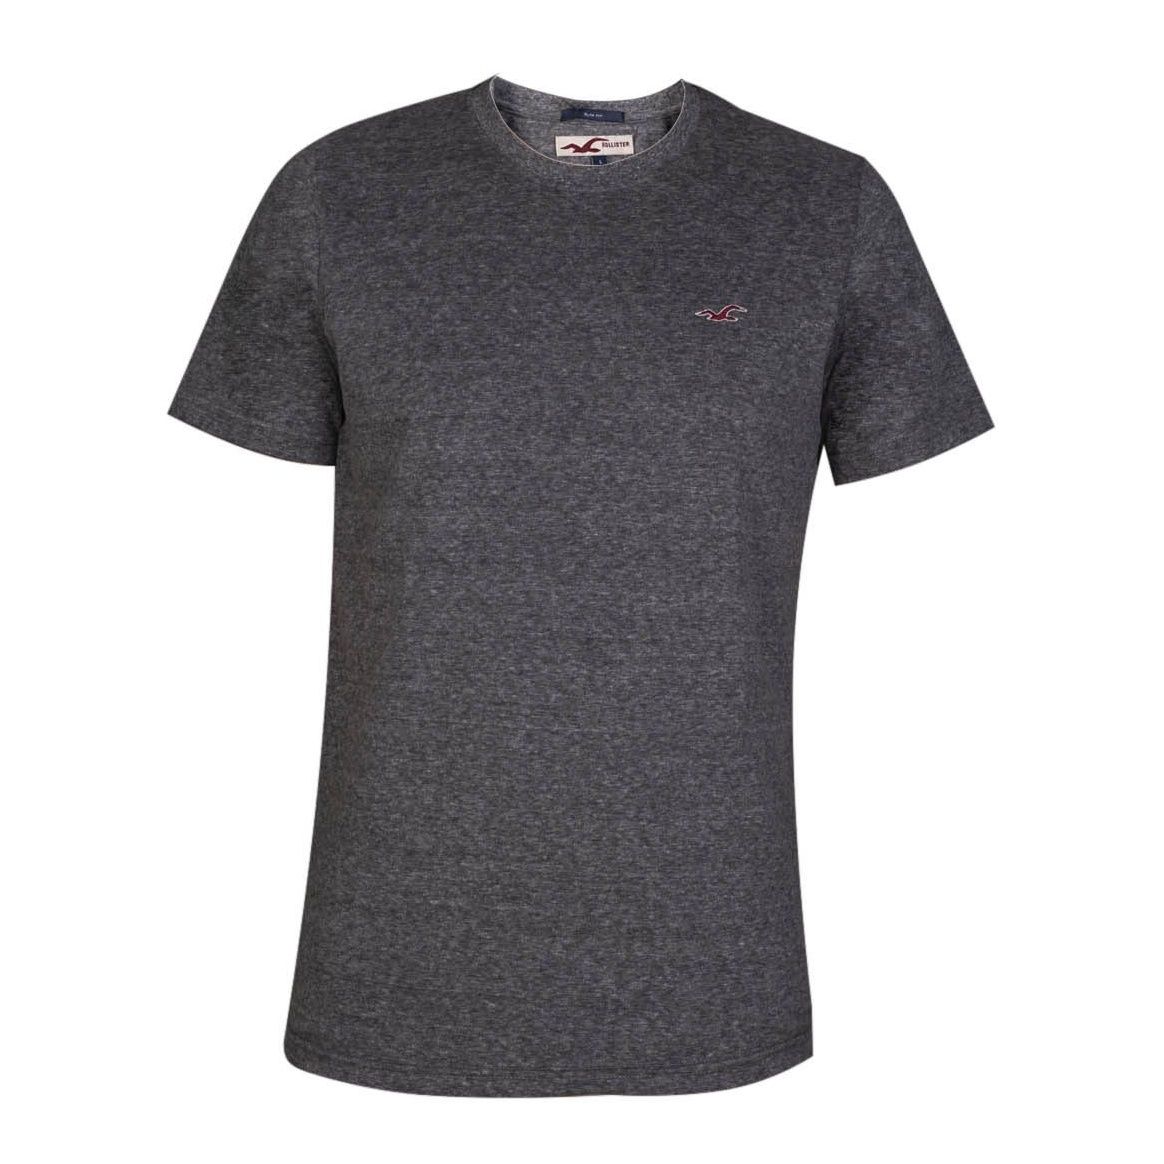 تی شرت مردانه مدل hls کد 251-285